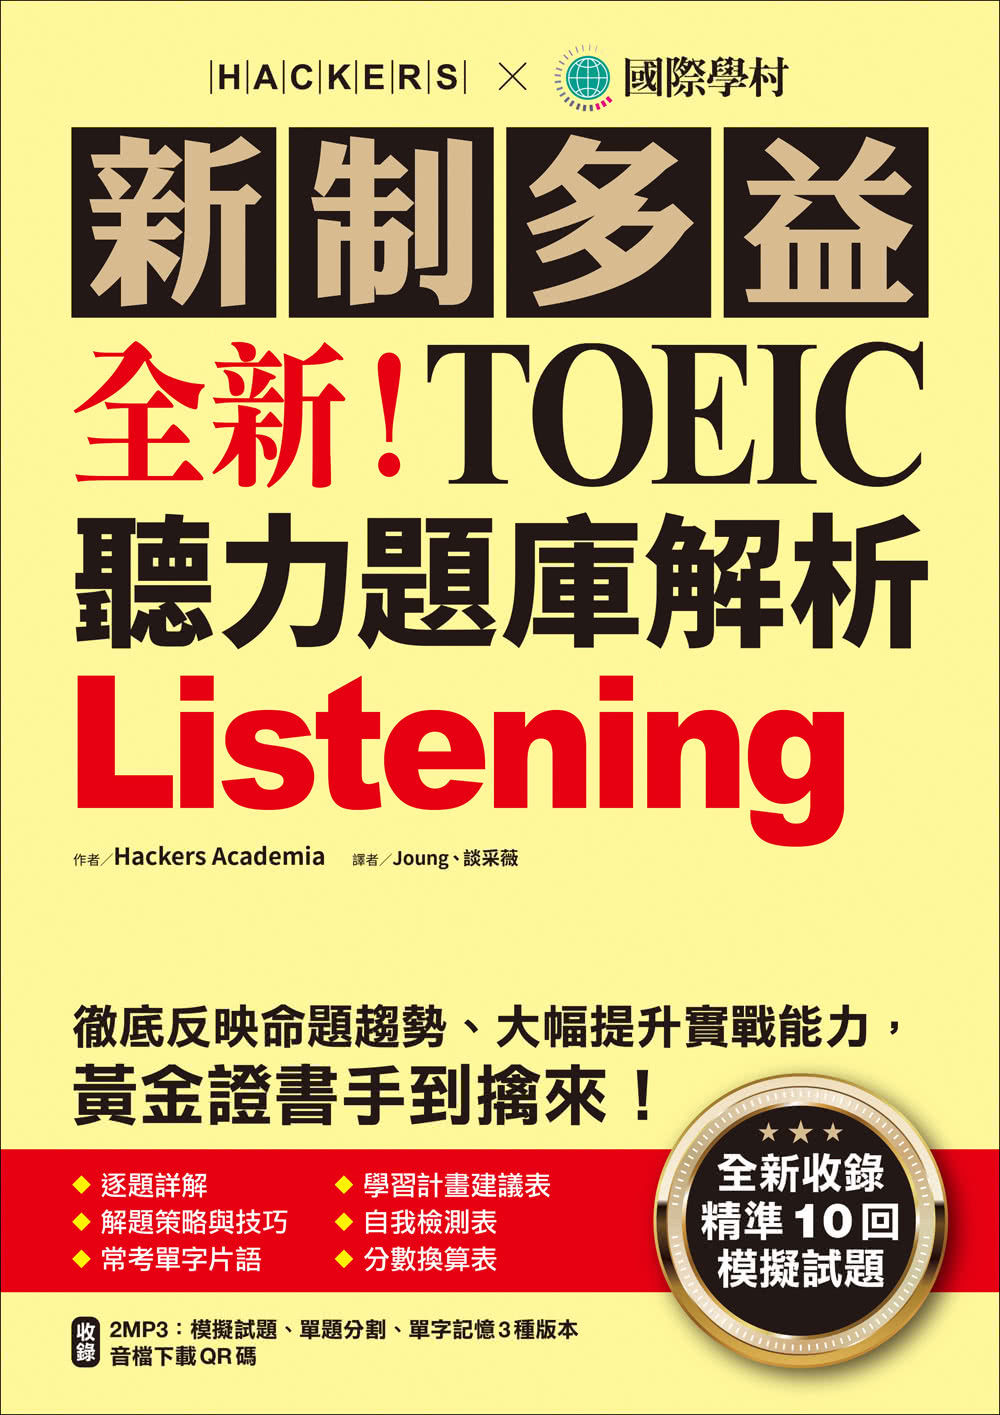 全新！新制多益 TOEIC 聽力題庫解析：全新收錄精準 10 回模擬試題！徹底反映命題趨勢、大幅提升實